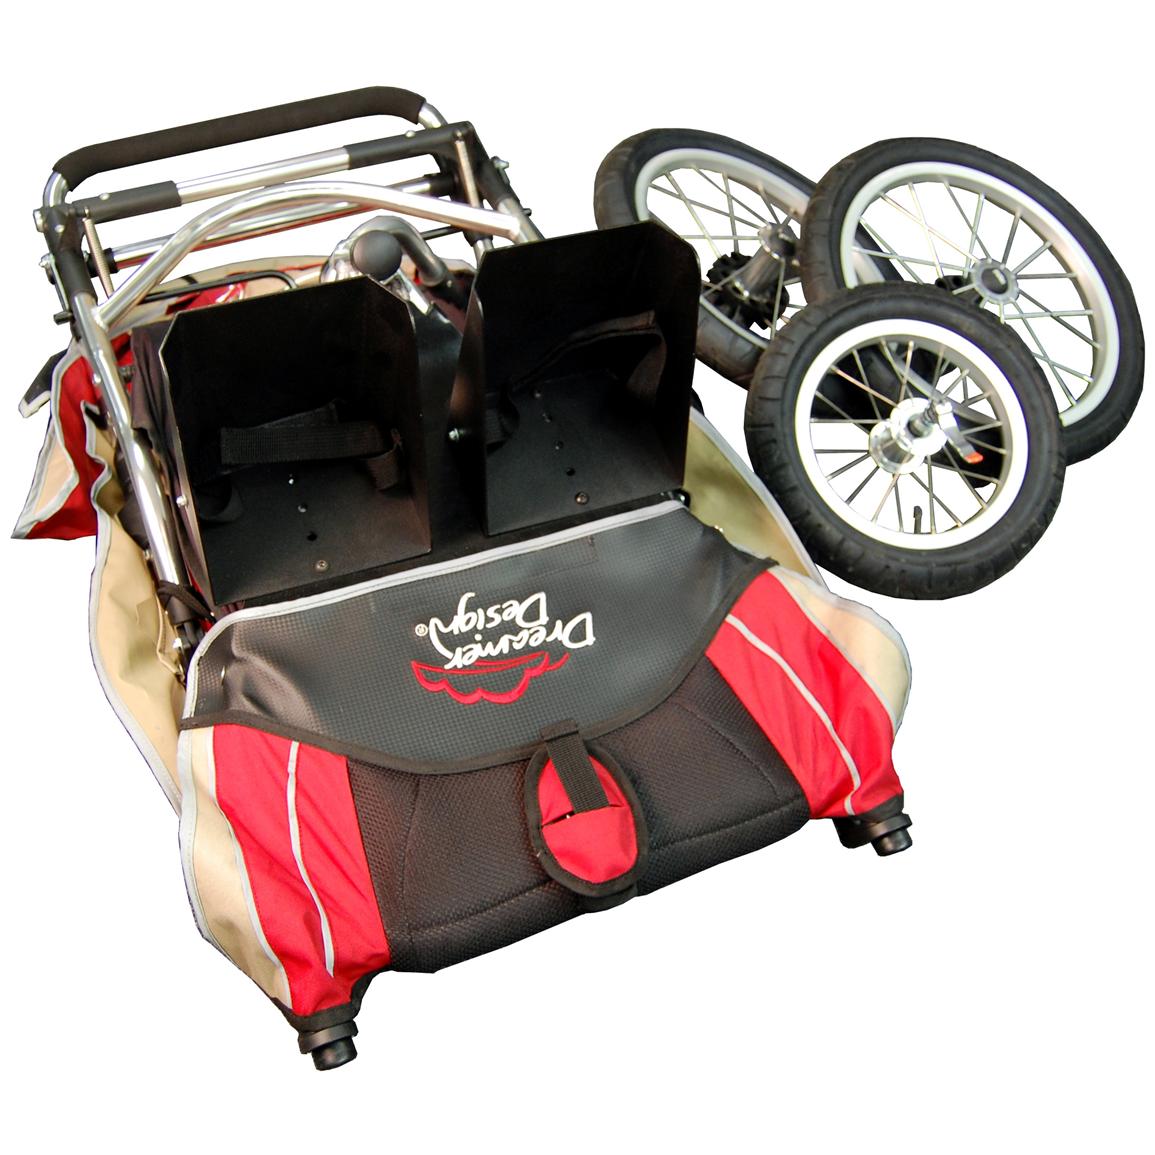 dreamer design special needs stroller